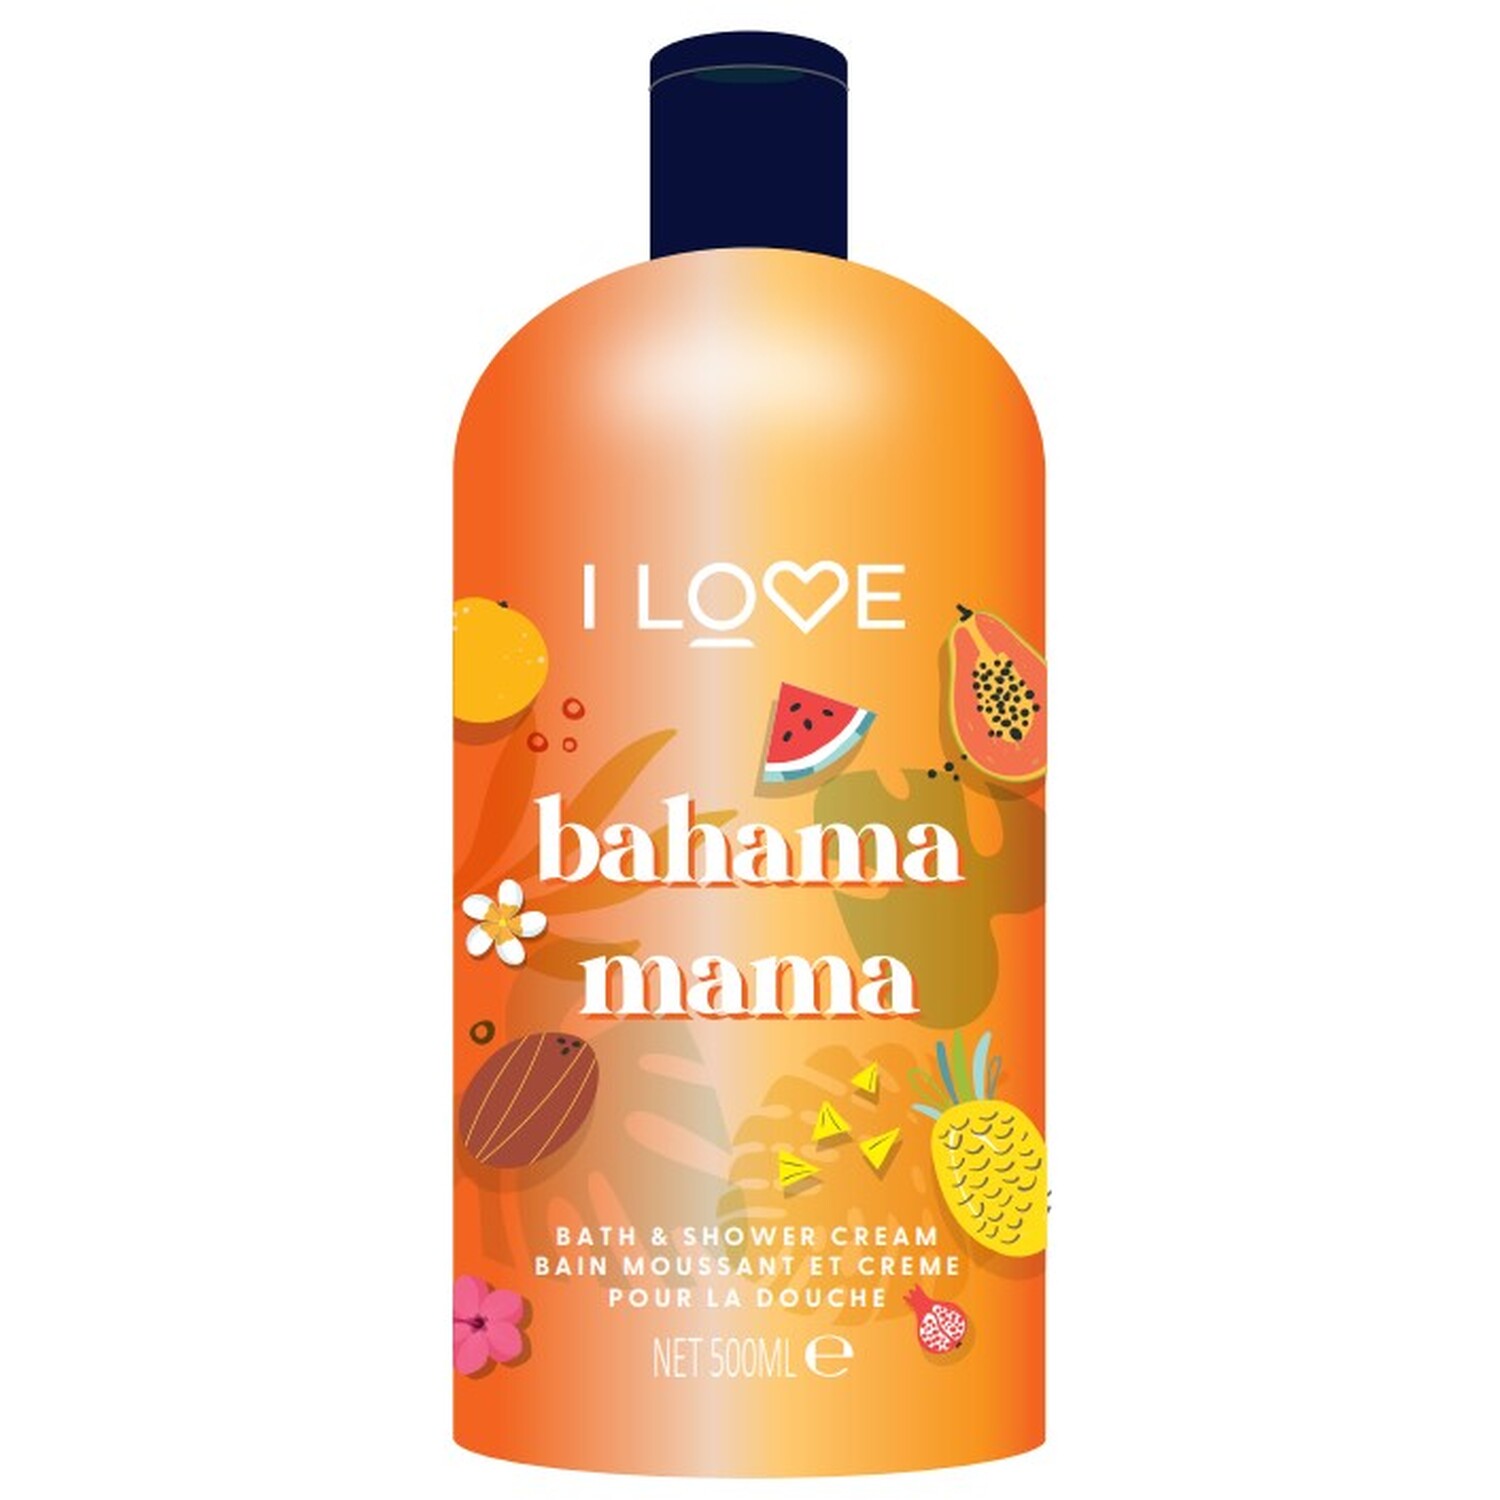 I LOVE Bahama Mama Bath and Shower Cream - Orange Image